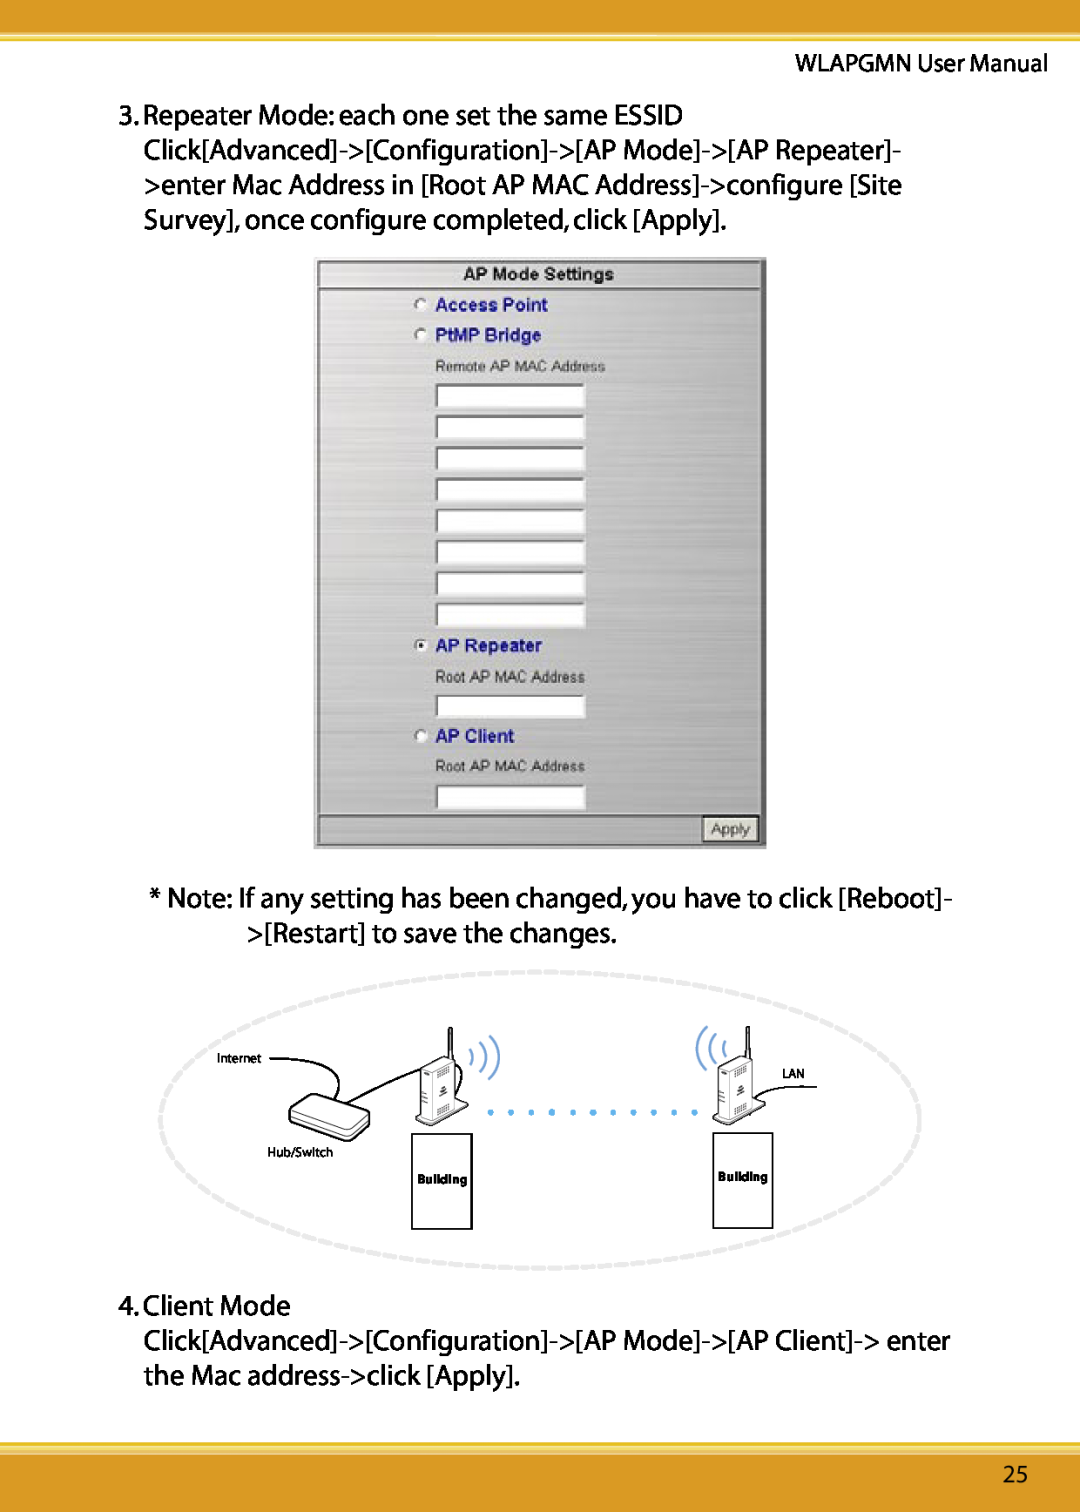 Corega CG-WLAPGMN user manual Internet LAN Hub/Switch, Building 